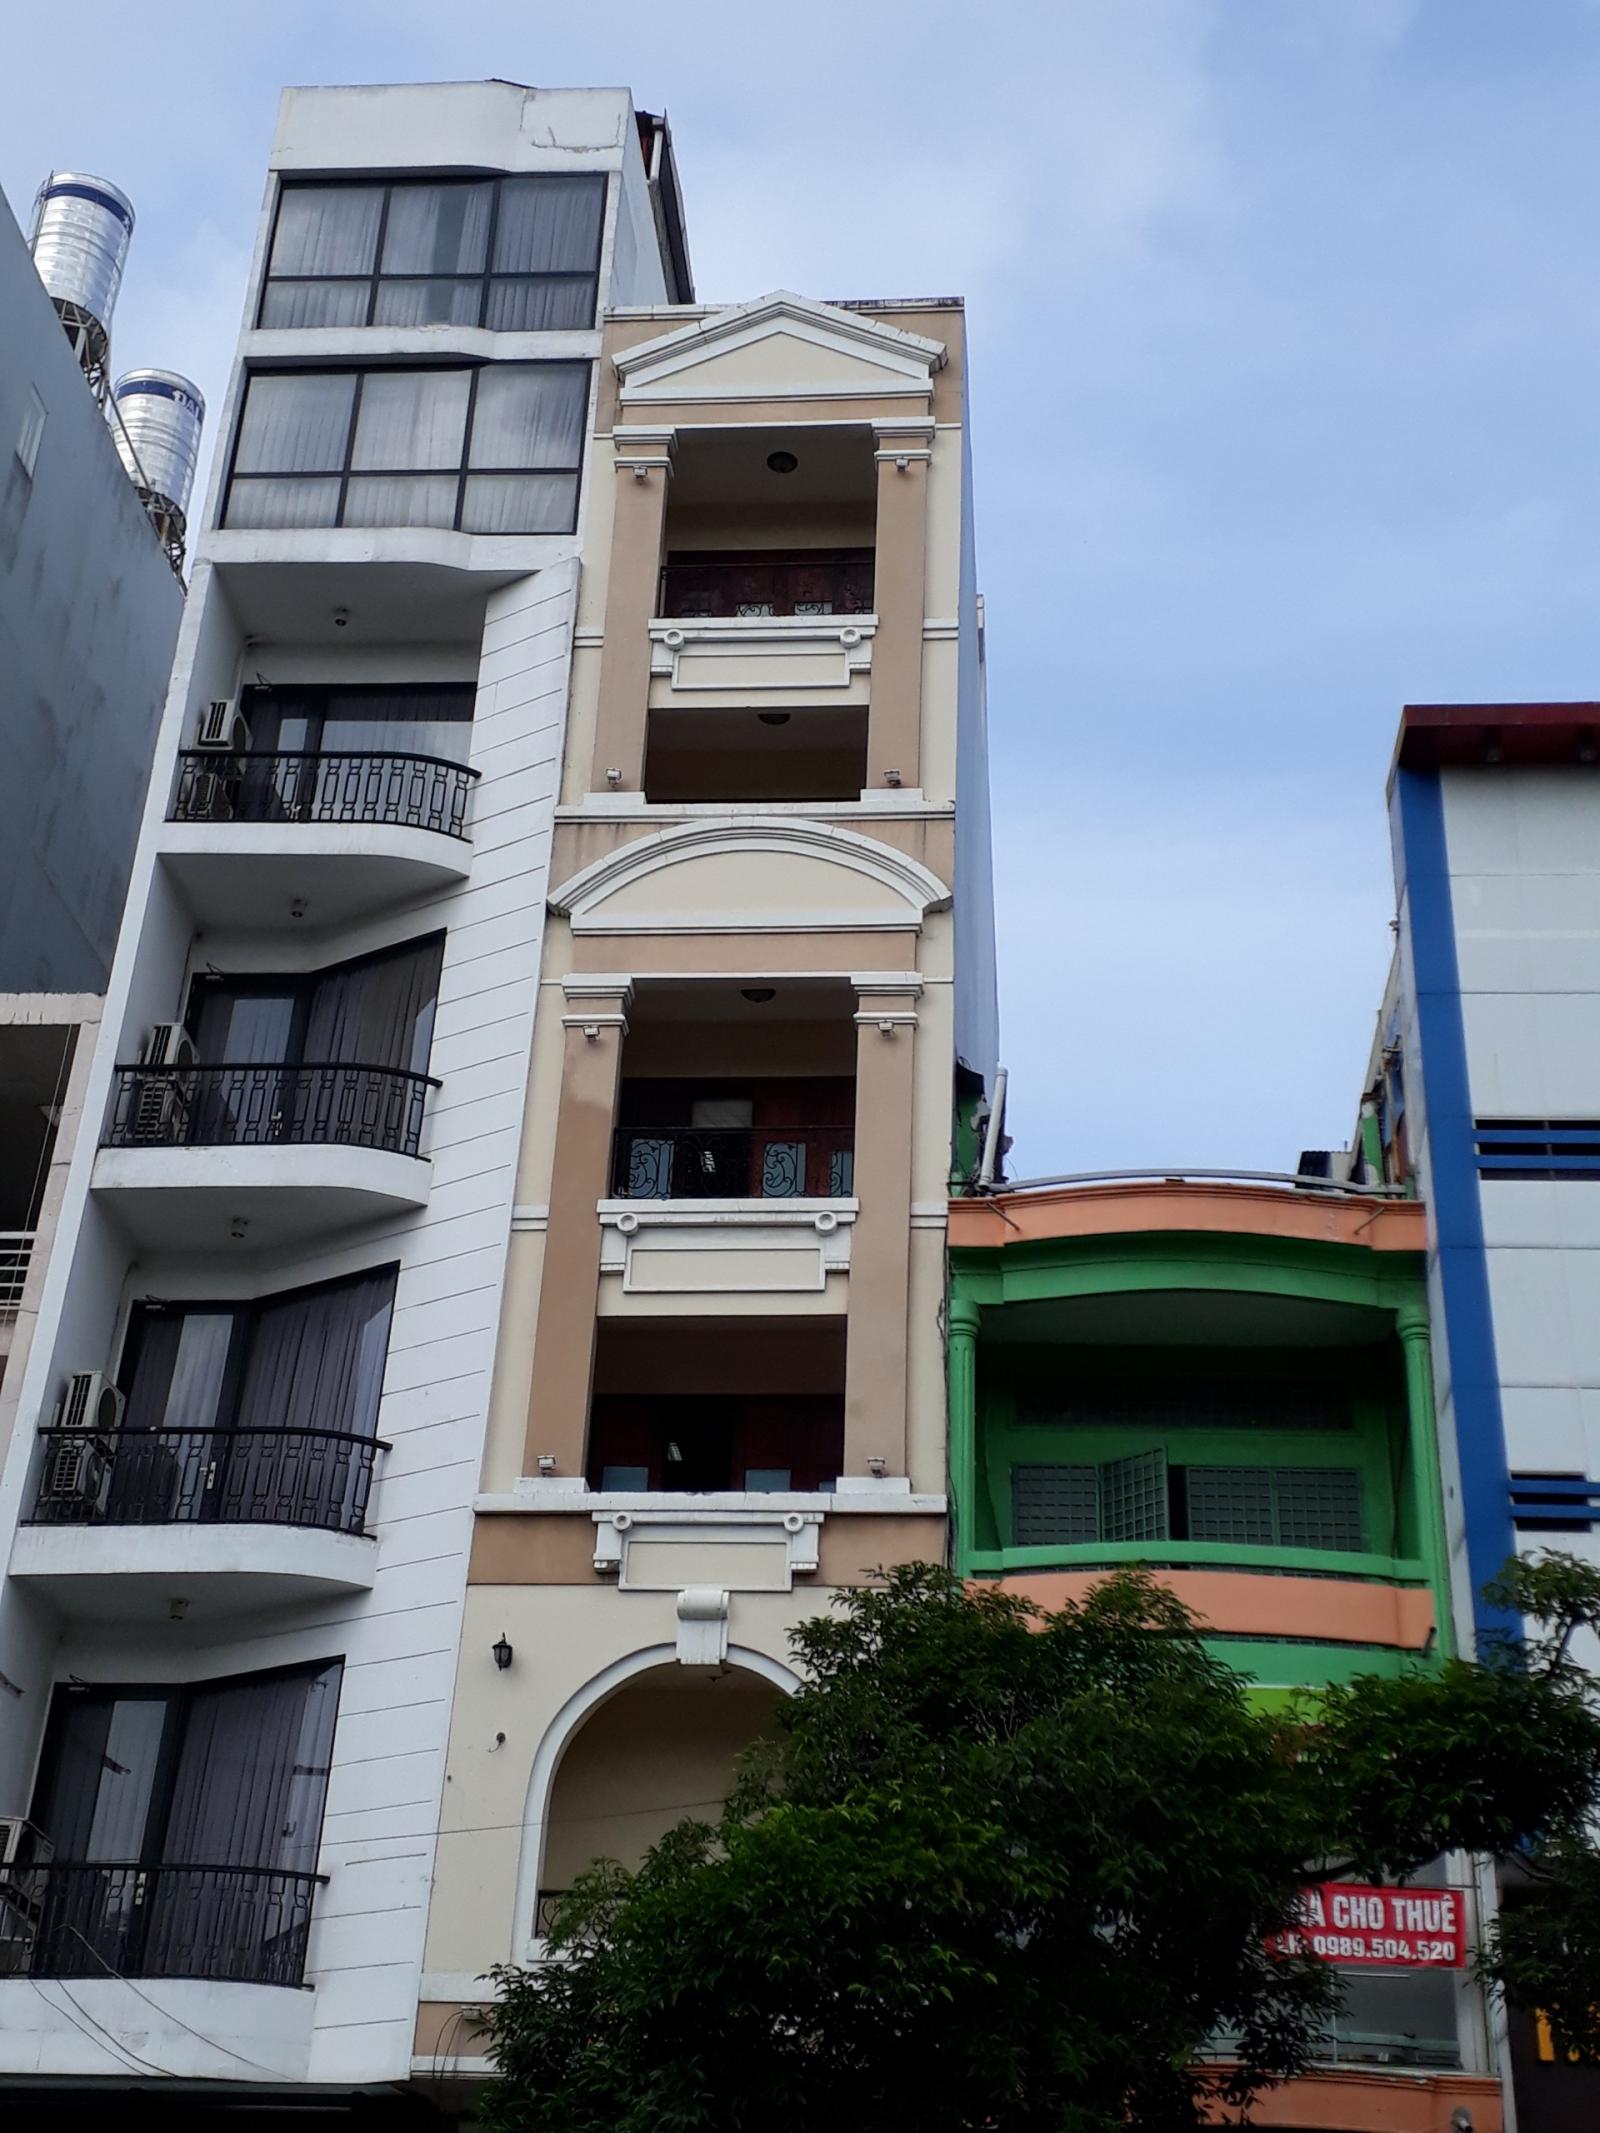  Bán toà nhà 6 lầu đang cho thuê nguyên căn MT Trần Phú, lề phải đối diện công viên gần Bến Thành